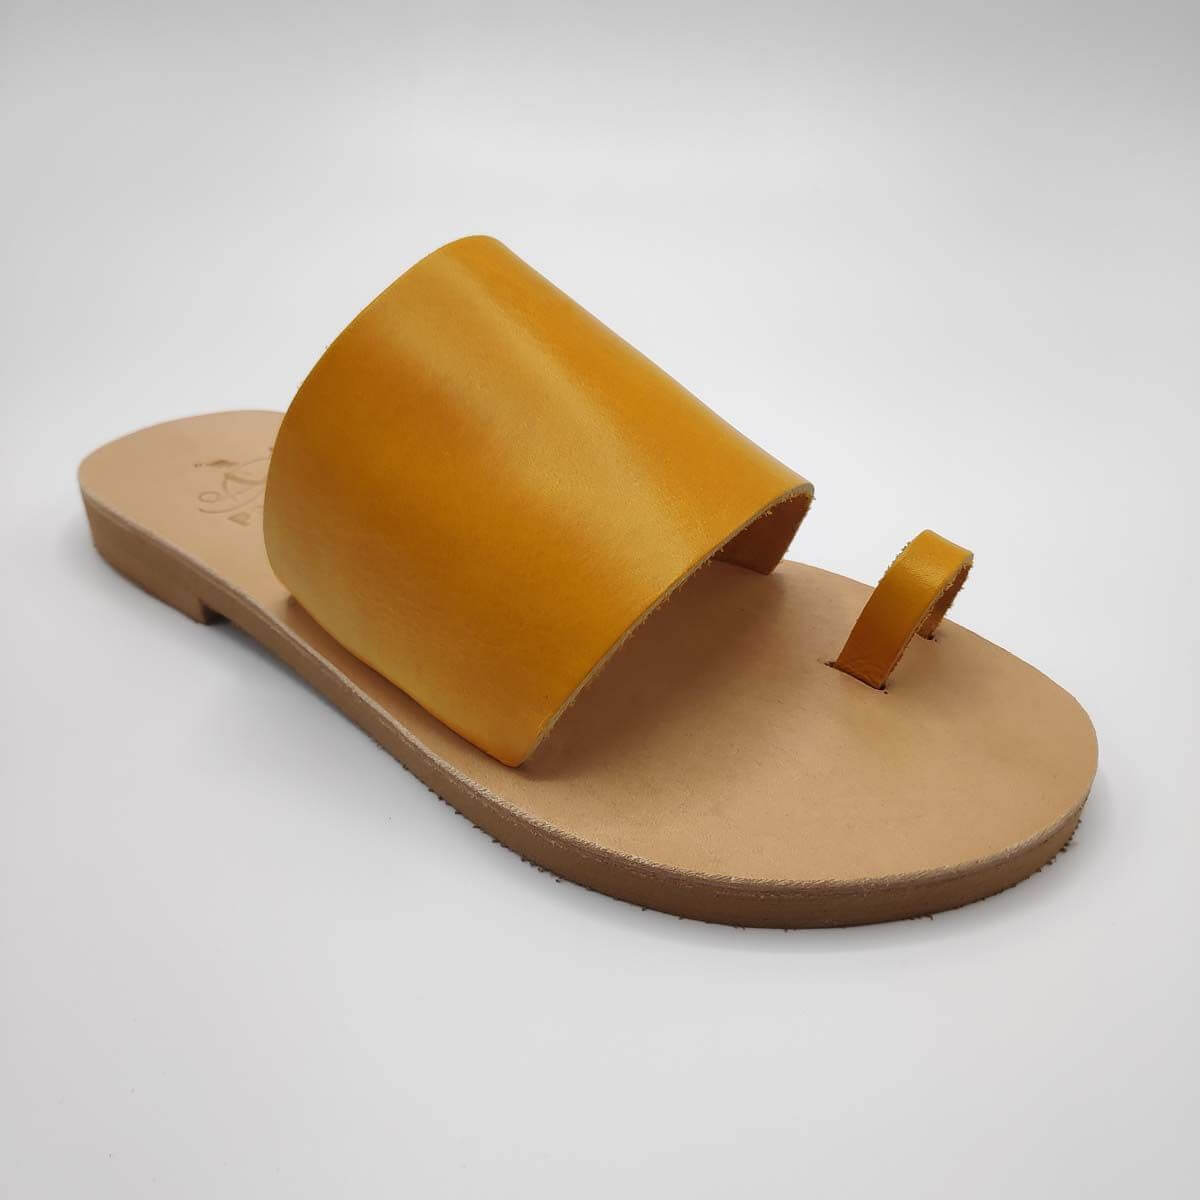 Dark Brown Leather Toe Ring Sandals for Men With Adjustable Buckle Strap  Greek Gladiator Strappy Men's Slide Sandals Summer Shoes for Men - Etsy